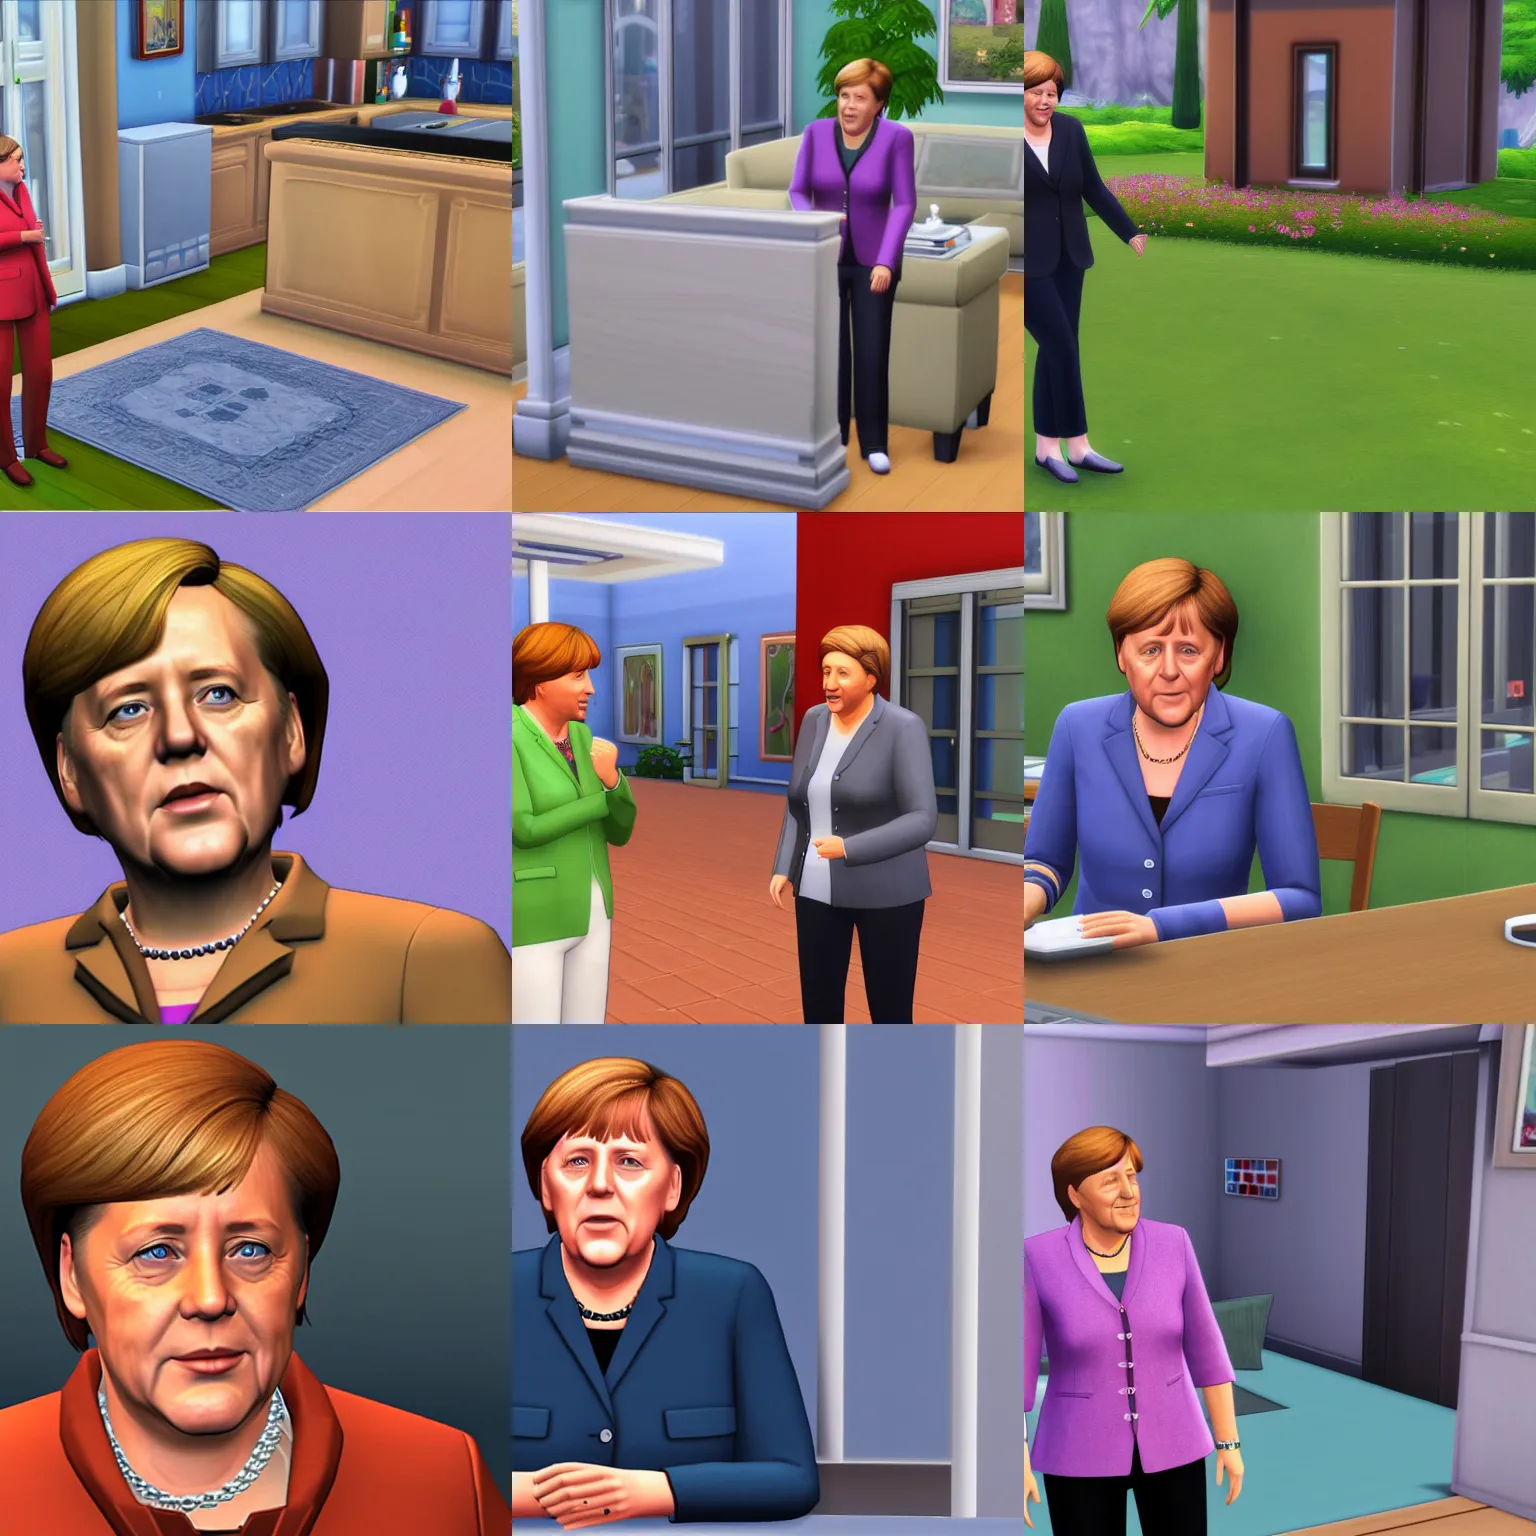 Prompt: Angela Merkel in The Sims 4